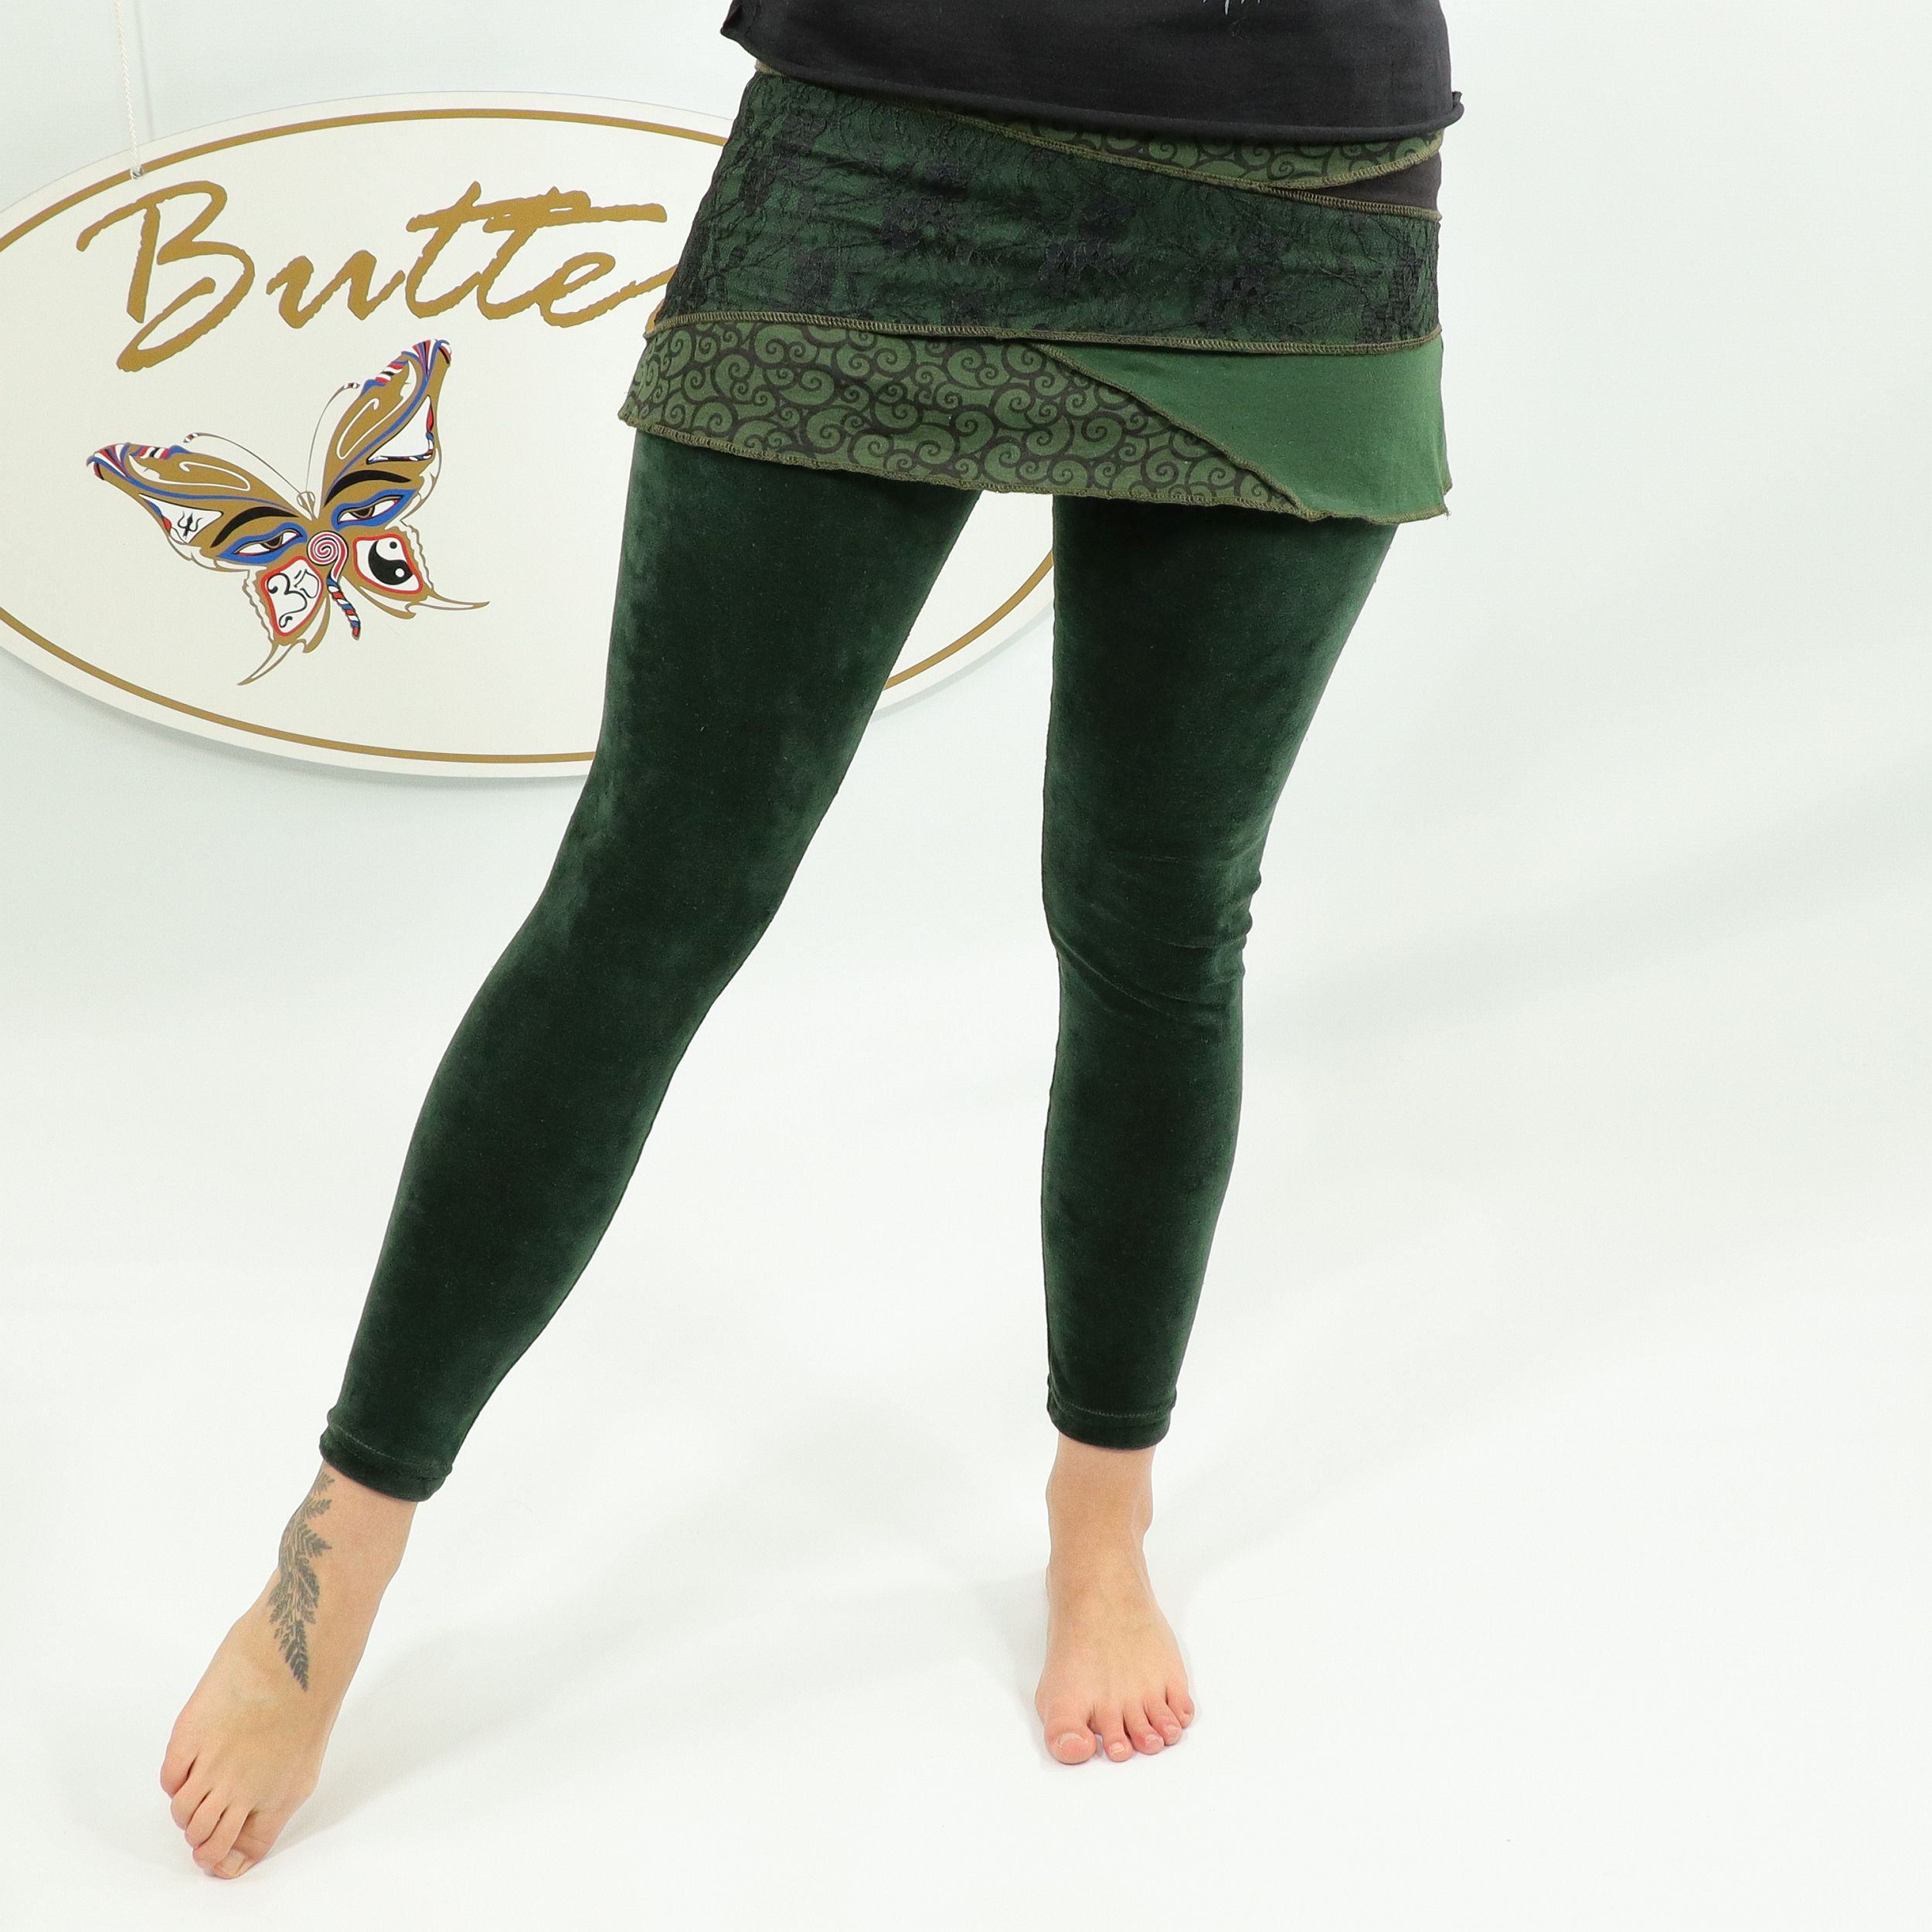 Leggings für Damen - elegante Minirock Kombi - Gothik Elfen Look Design - Baumwollsamt mit Spitze - für Dein Workout oder zur Party - Fair gehandelt aus Nepal